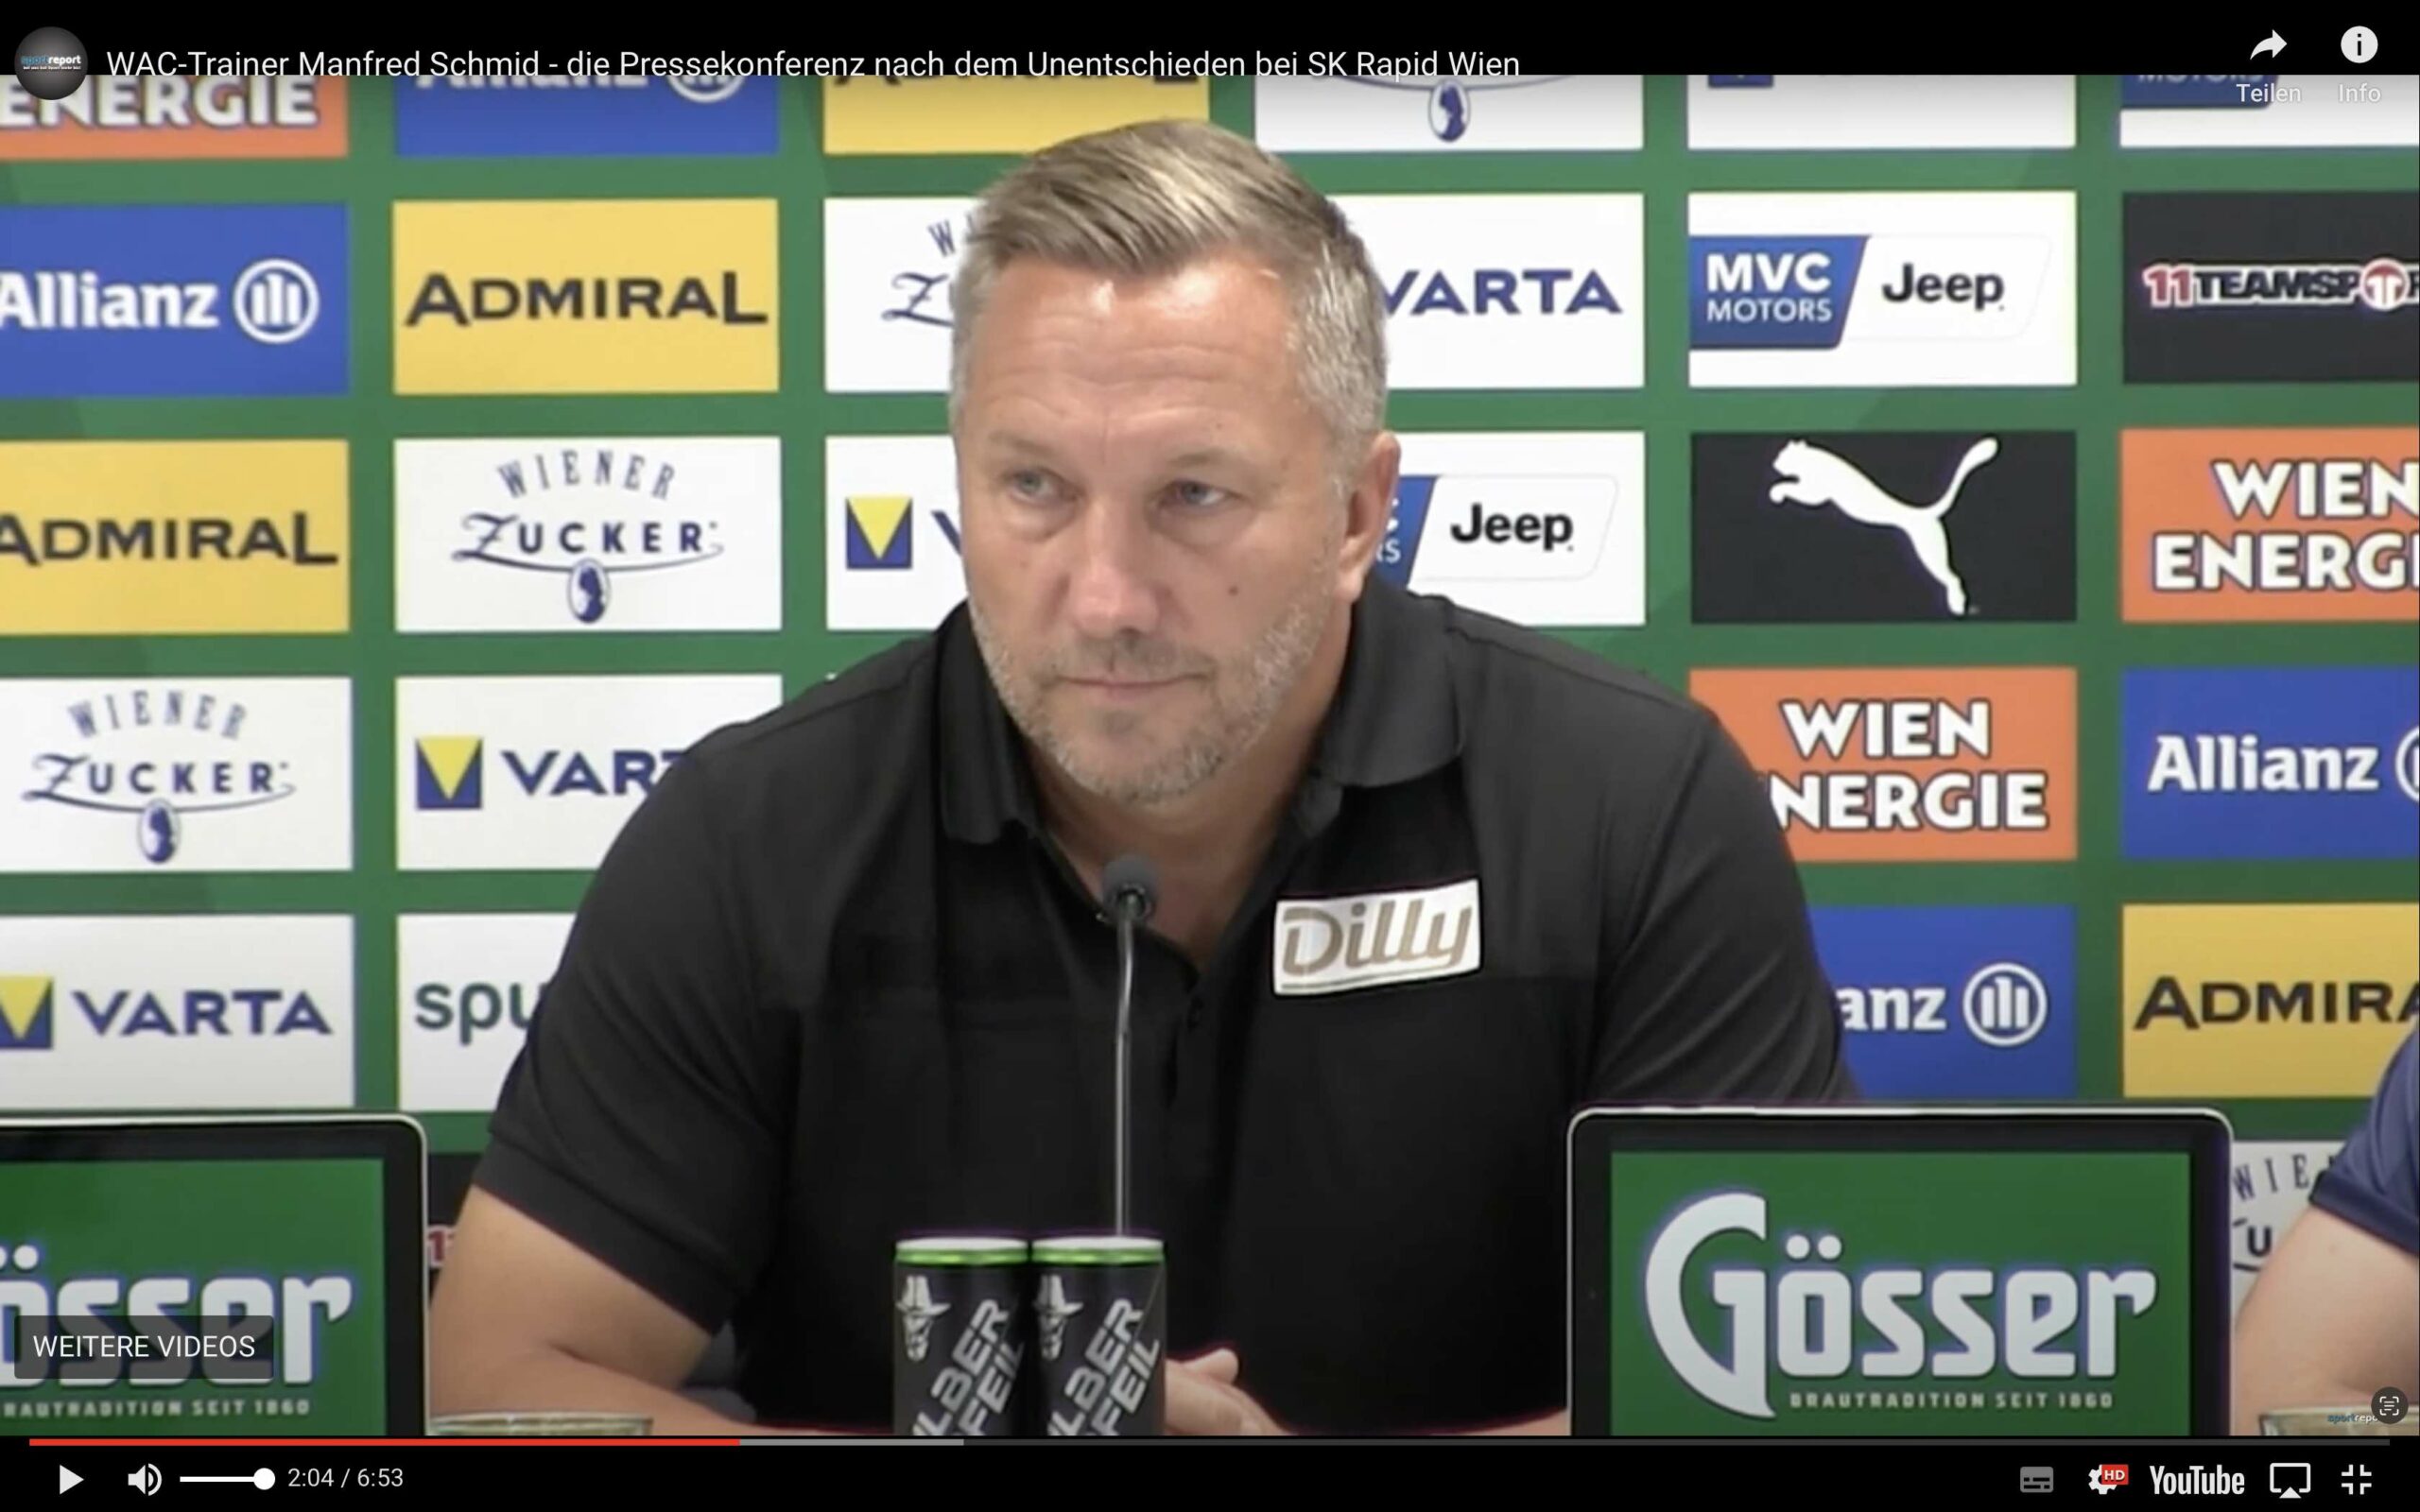 Video: Manfred Schmid (Trainer WAC) - die Pressekonferenz nach dem Spiel gegen SK Rapid Wien